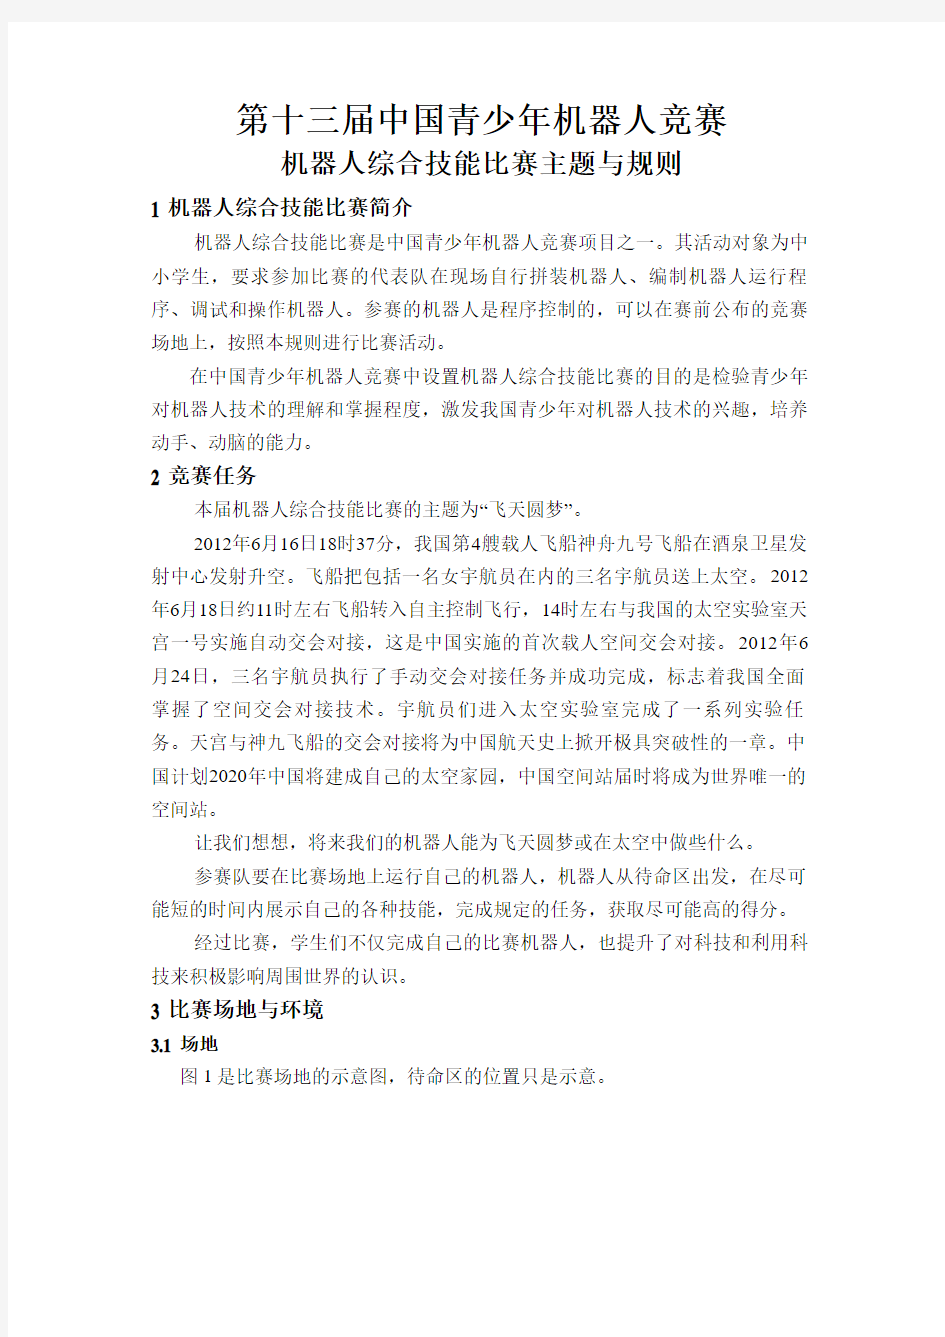 2013年第十三届中国青少年机器人竞赛规则01机器人综合技能比赛主题与规则